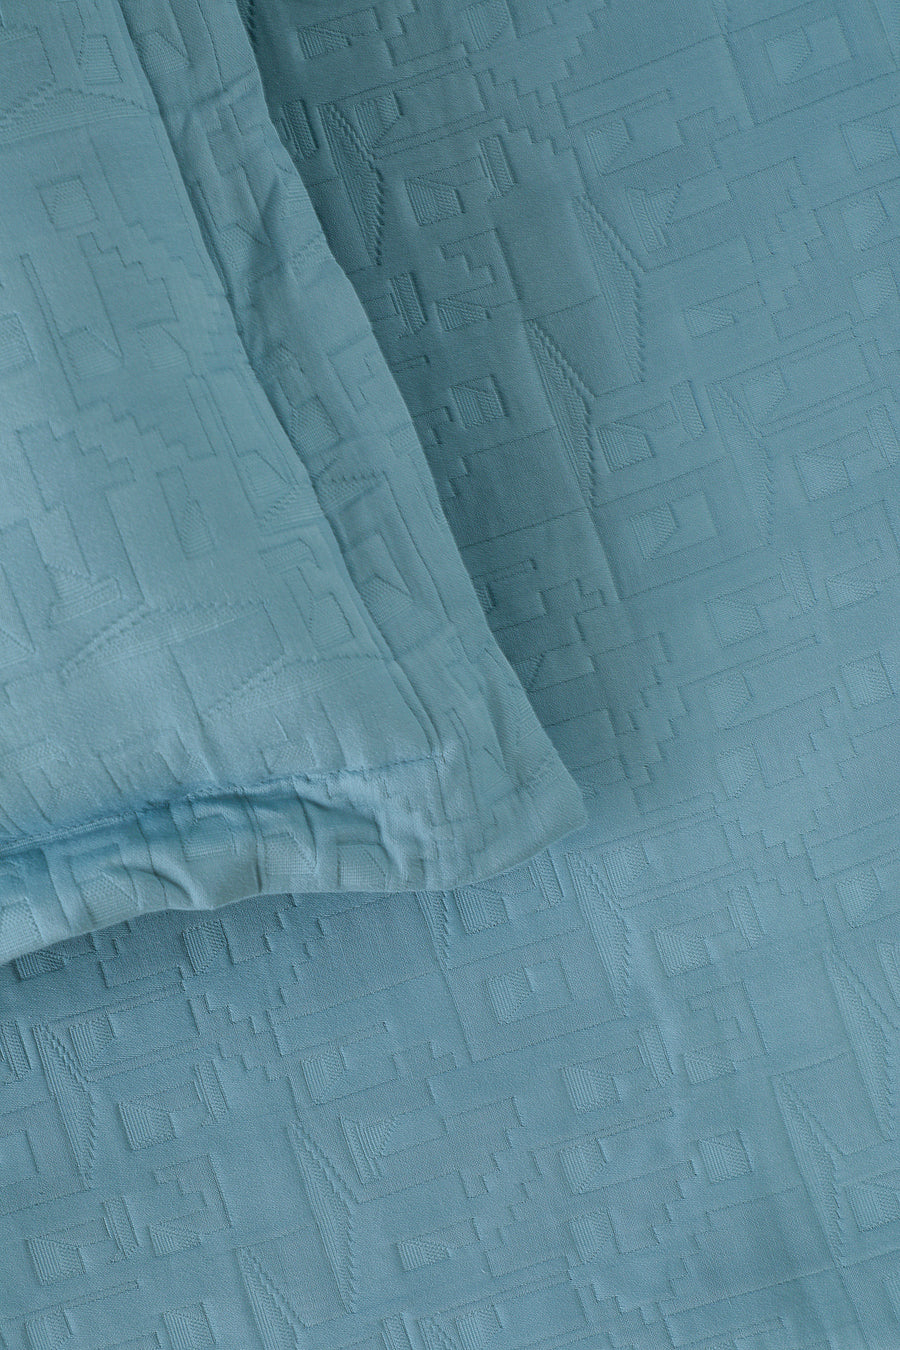 Kaheo Ice Berg Bedspread Set